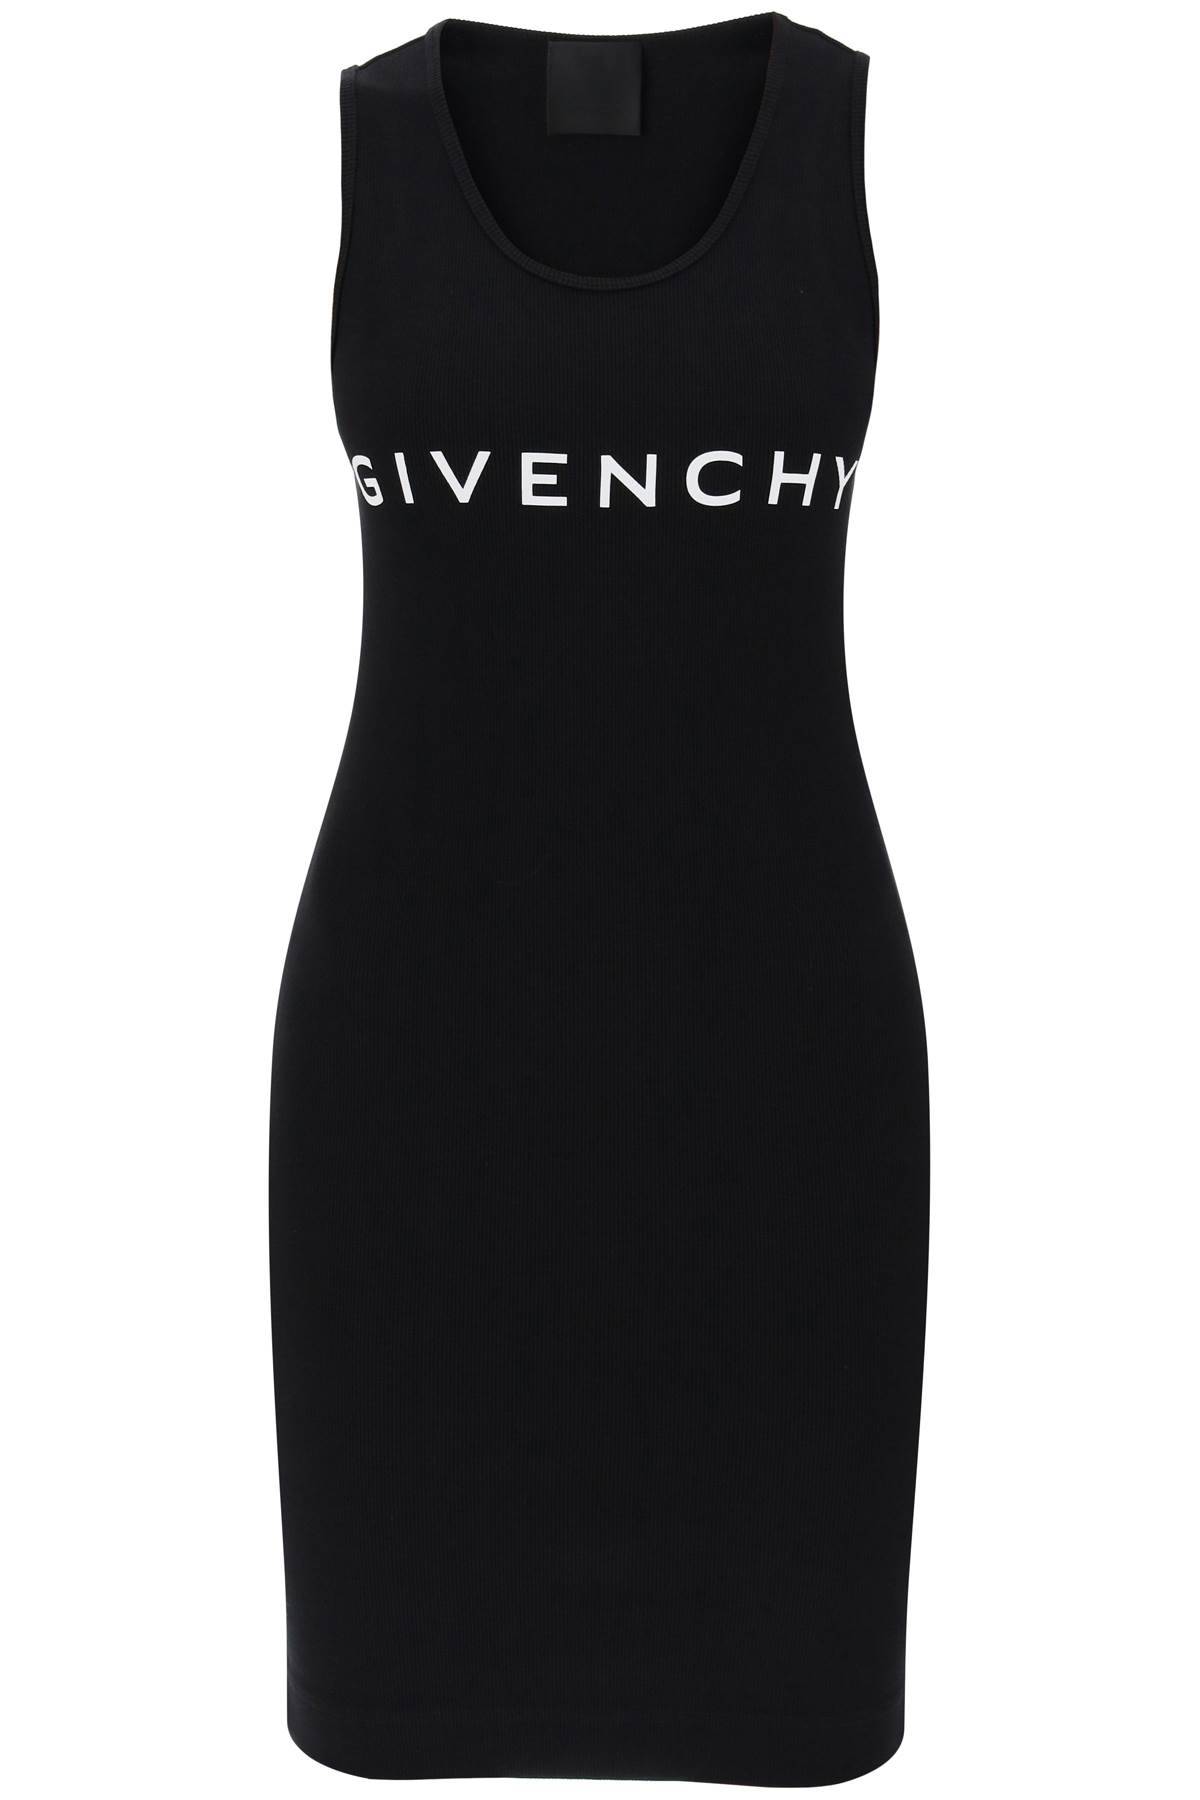 Givenchy GIVENCHY ribbed logo mini dress